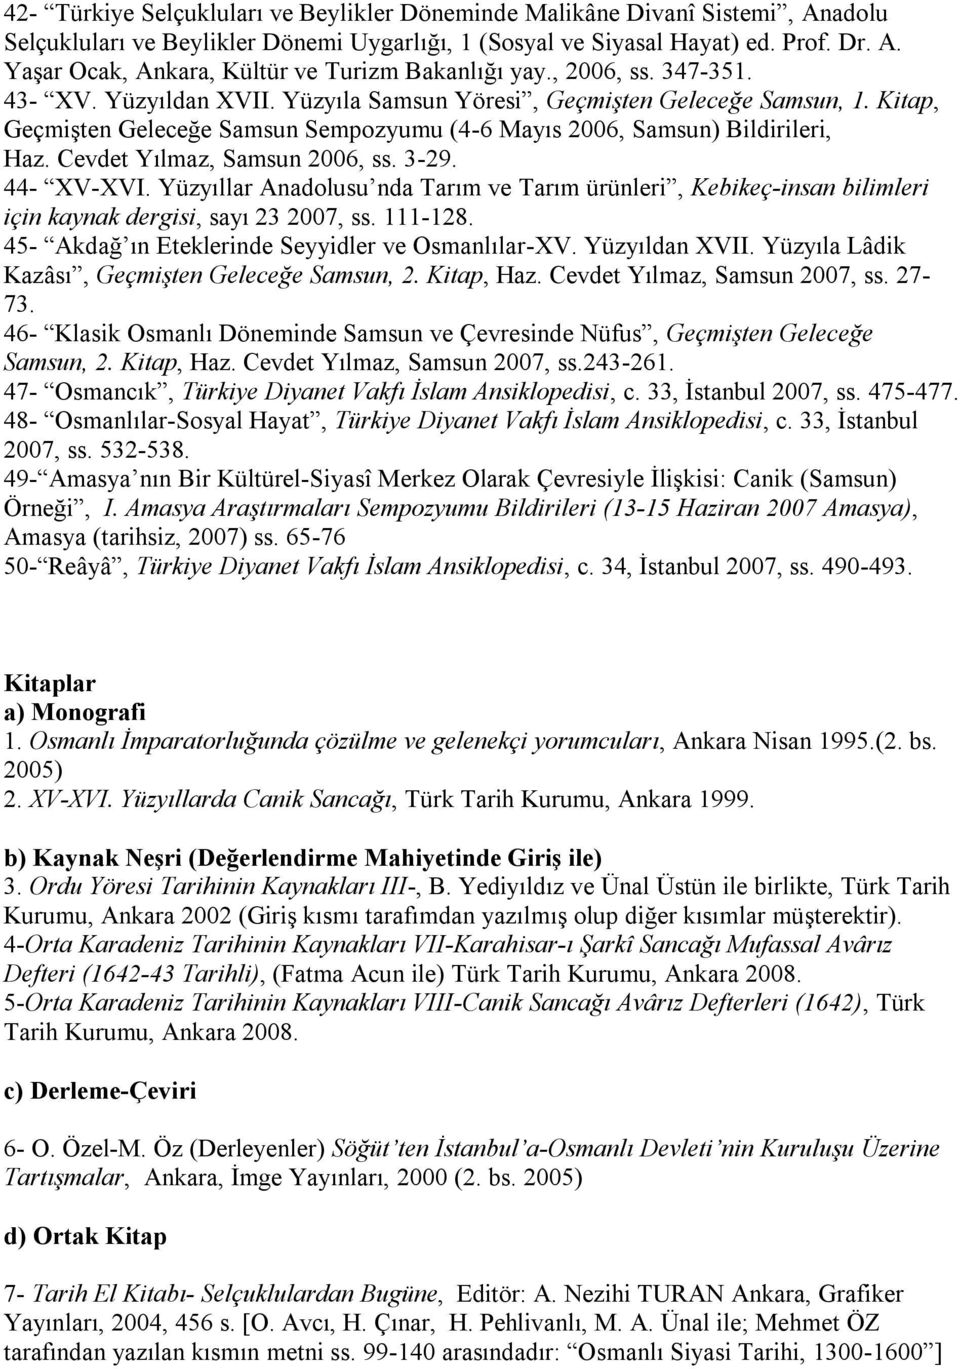 Cevdet Yılmaz, Samsun 2006, ss. 3-29. 44- XV-XVI. Yüzyıllar Anadolusu nda Tarım ve Tarım ürünleri, Kebikeç-insan bilimleri için kaynak dergisi, sayı 23 2007, ss. 111-128.